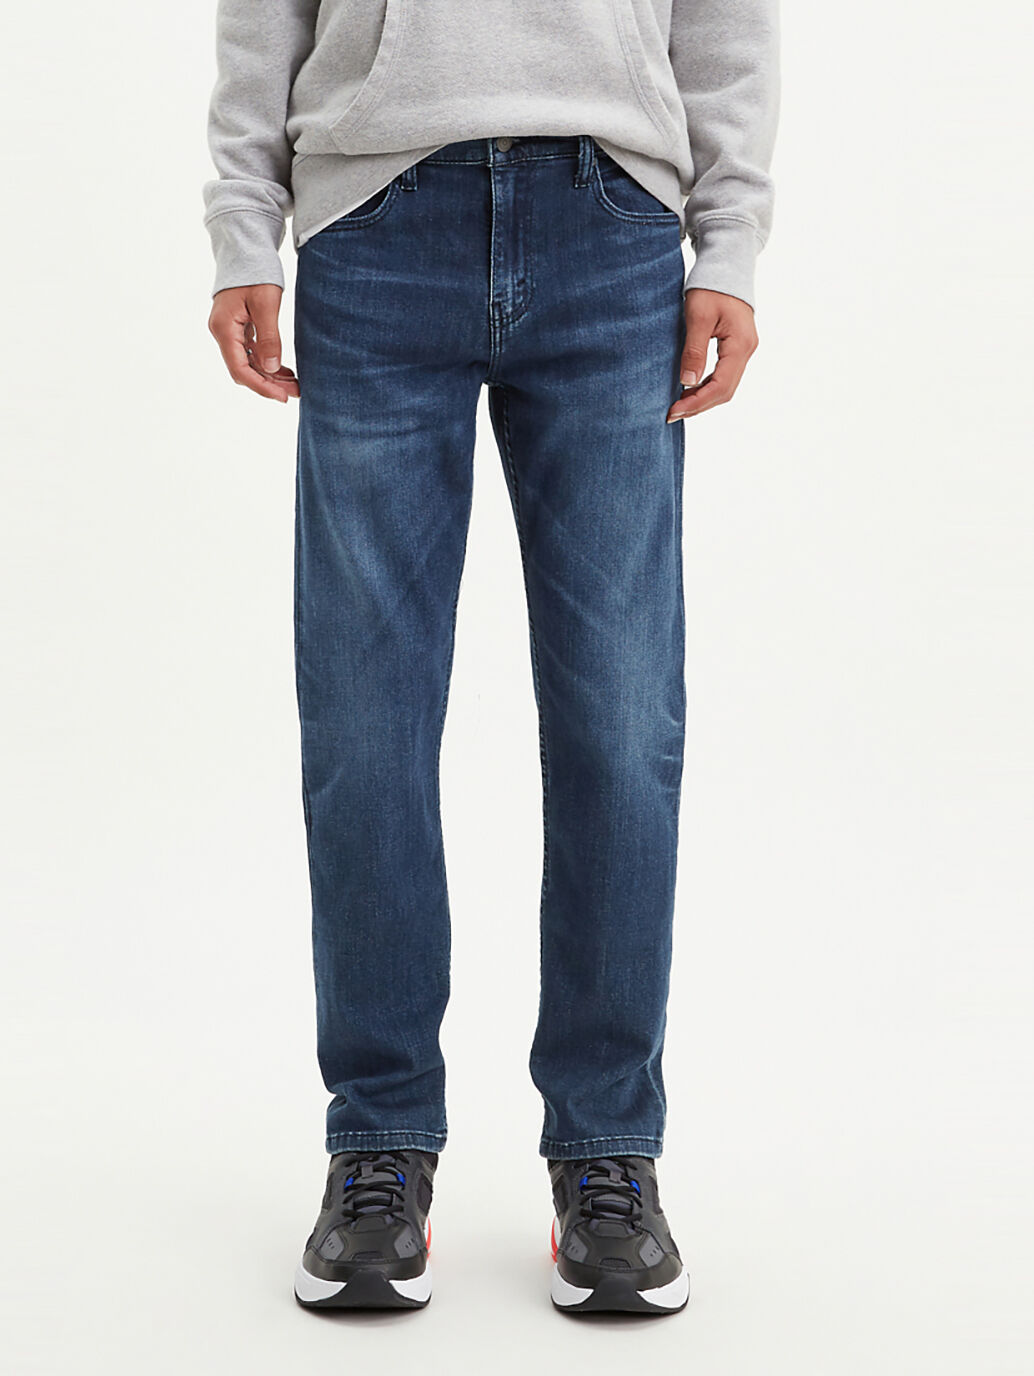 levis jeans sale near me